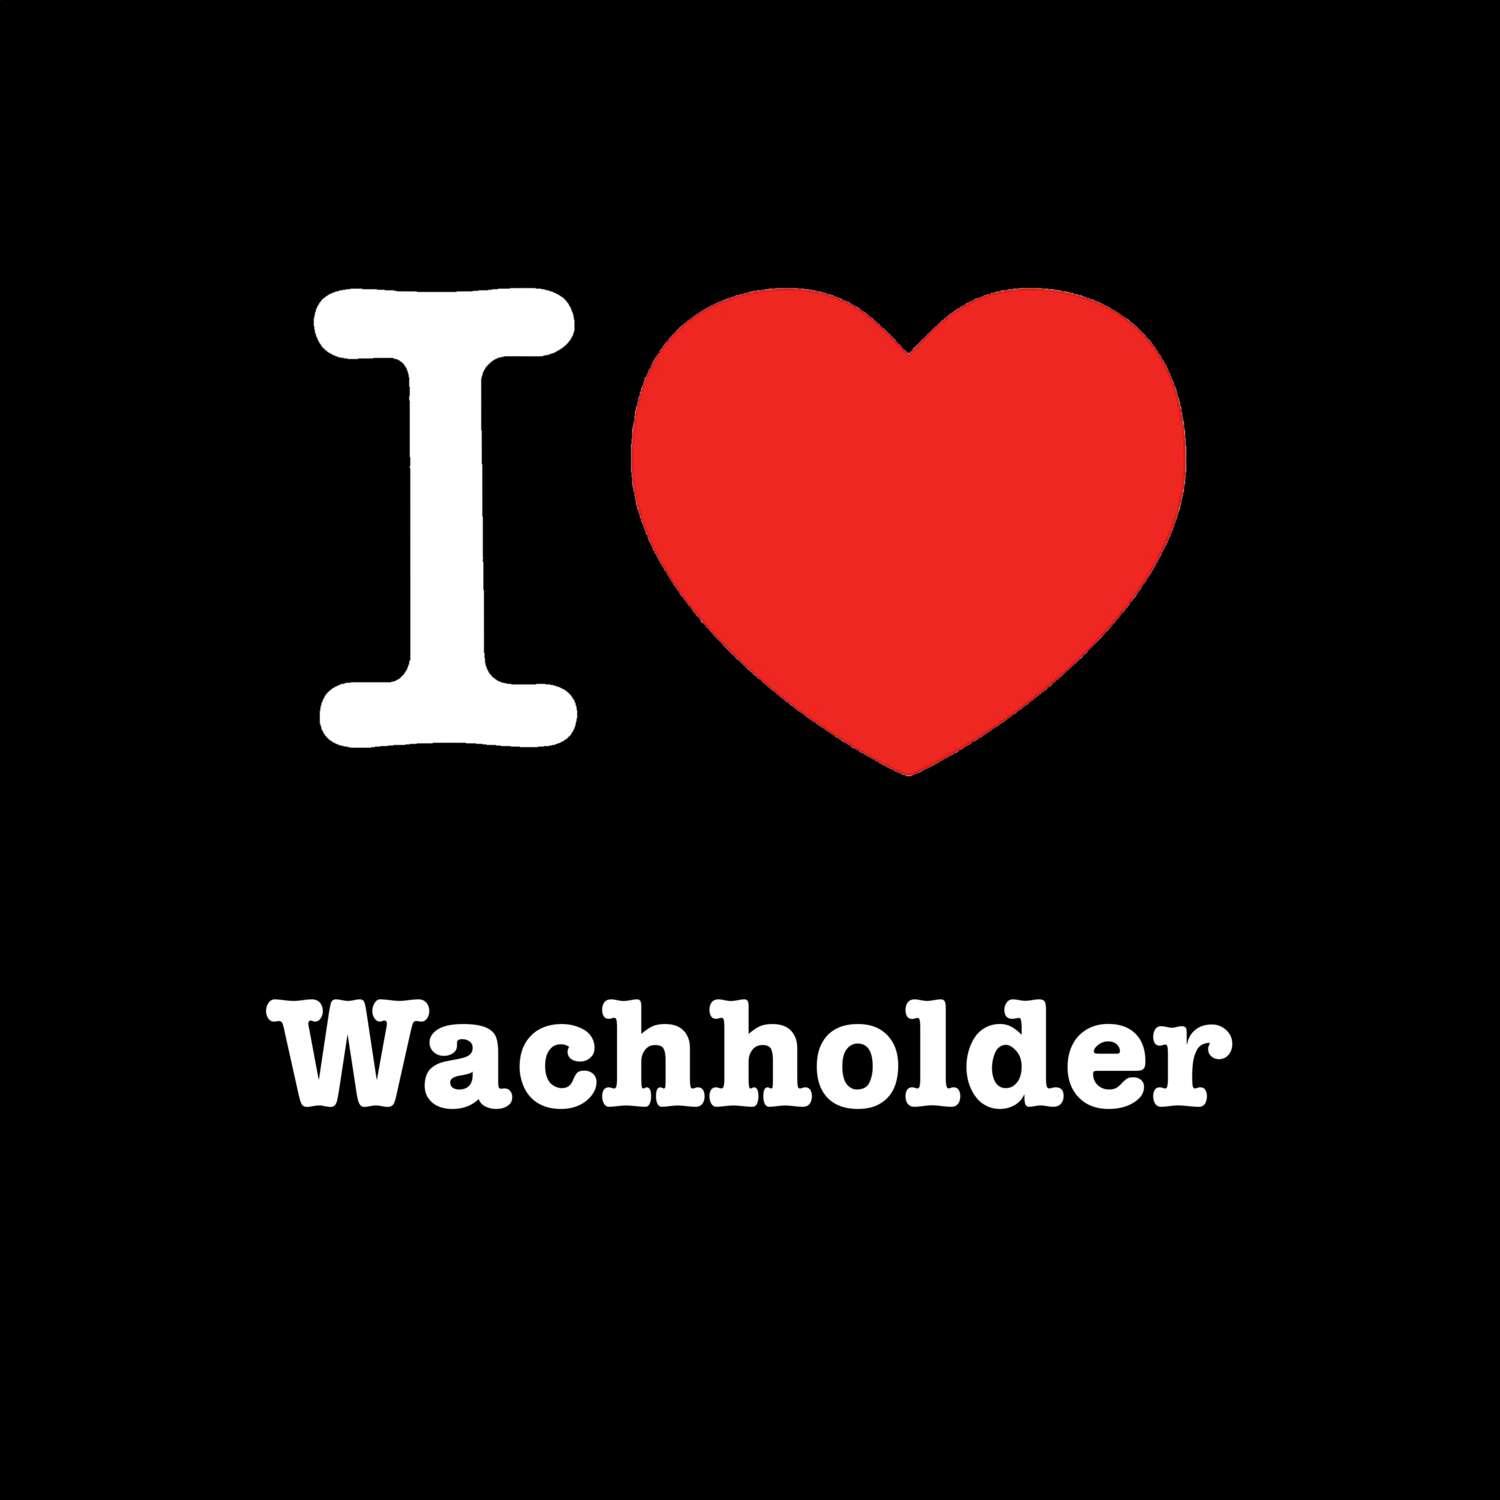 Wachholder T-Shirt »I love«